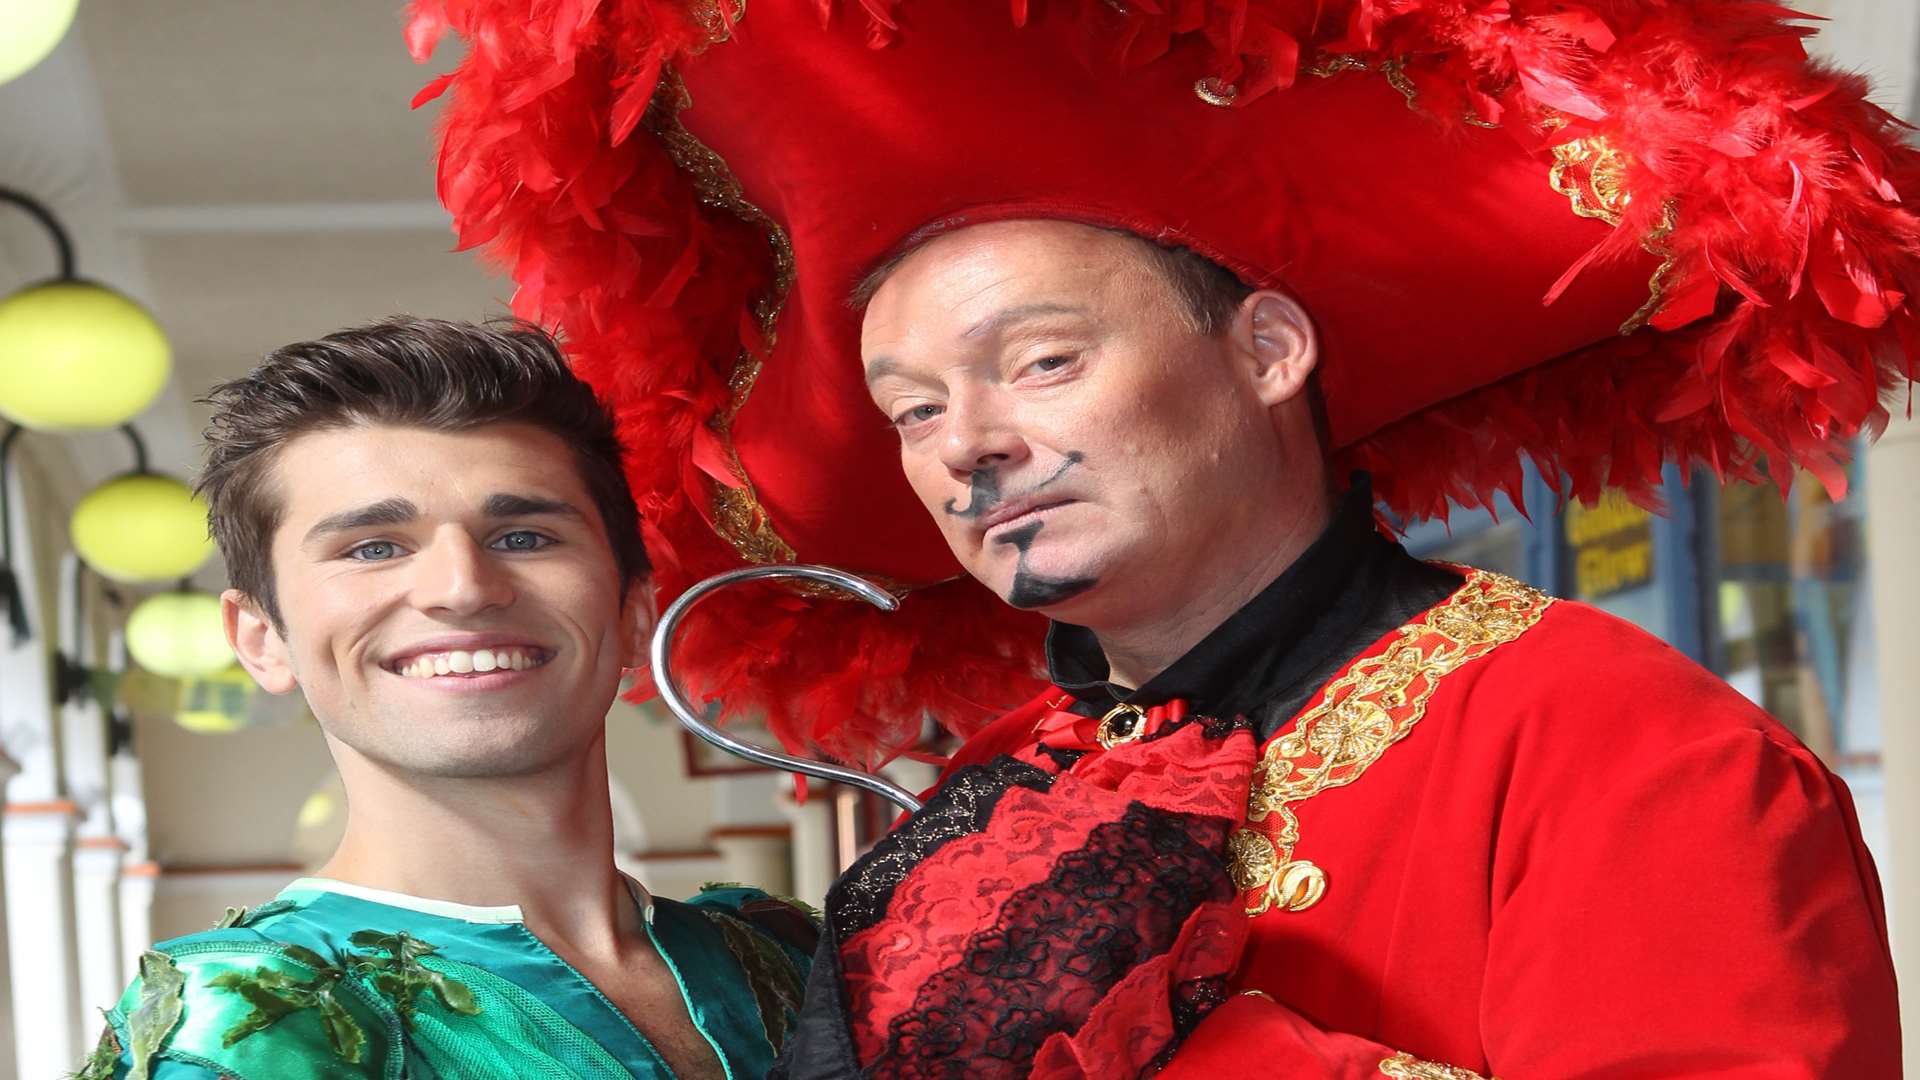 Jordan Veloso (Peter Pan) and Ricky Groves (Captain Hook) outside the Hazlitt Theatre, Earl Street